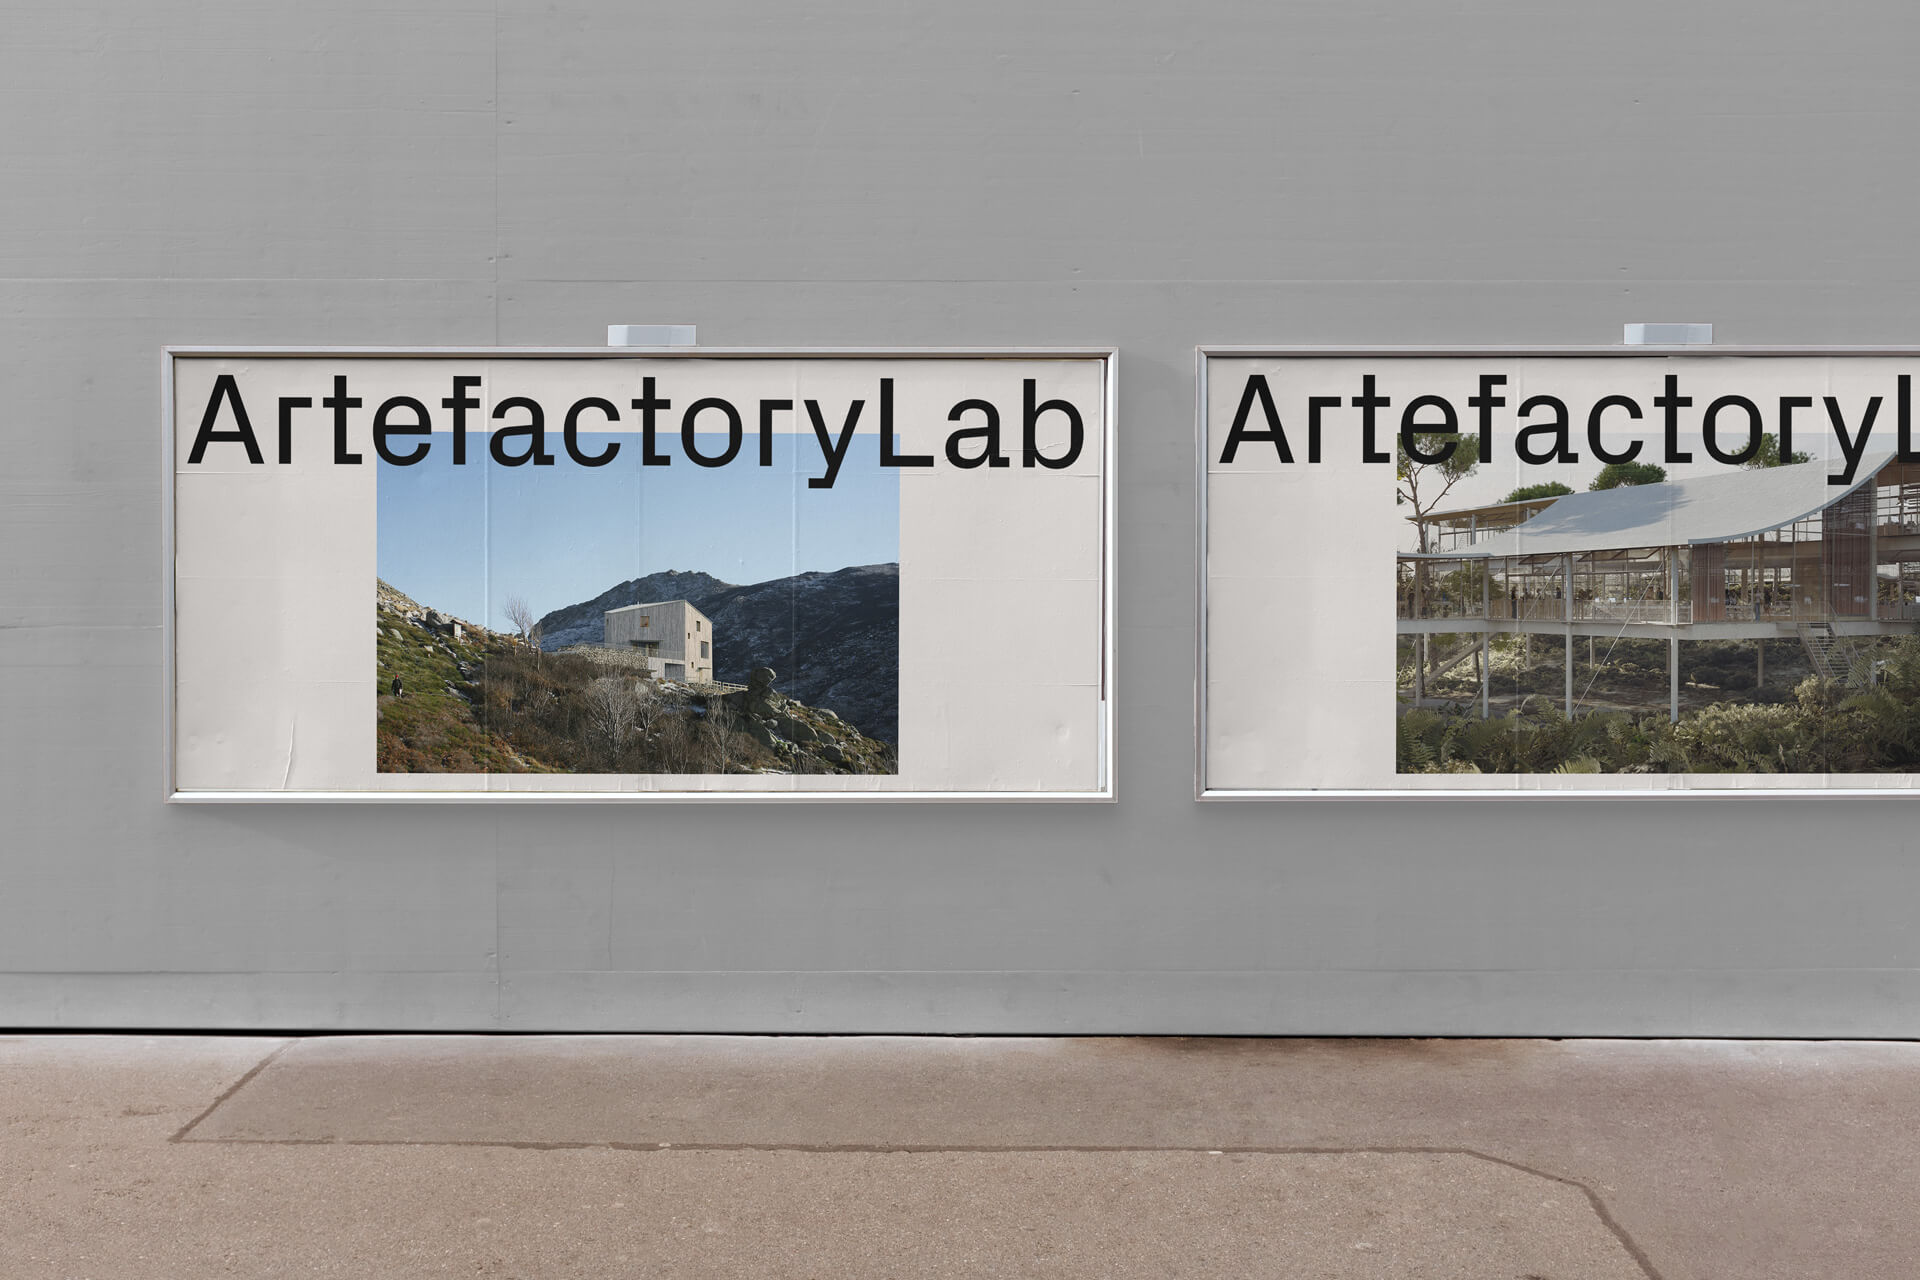 ArtefactoryLab